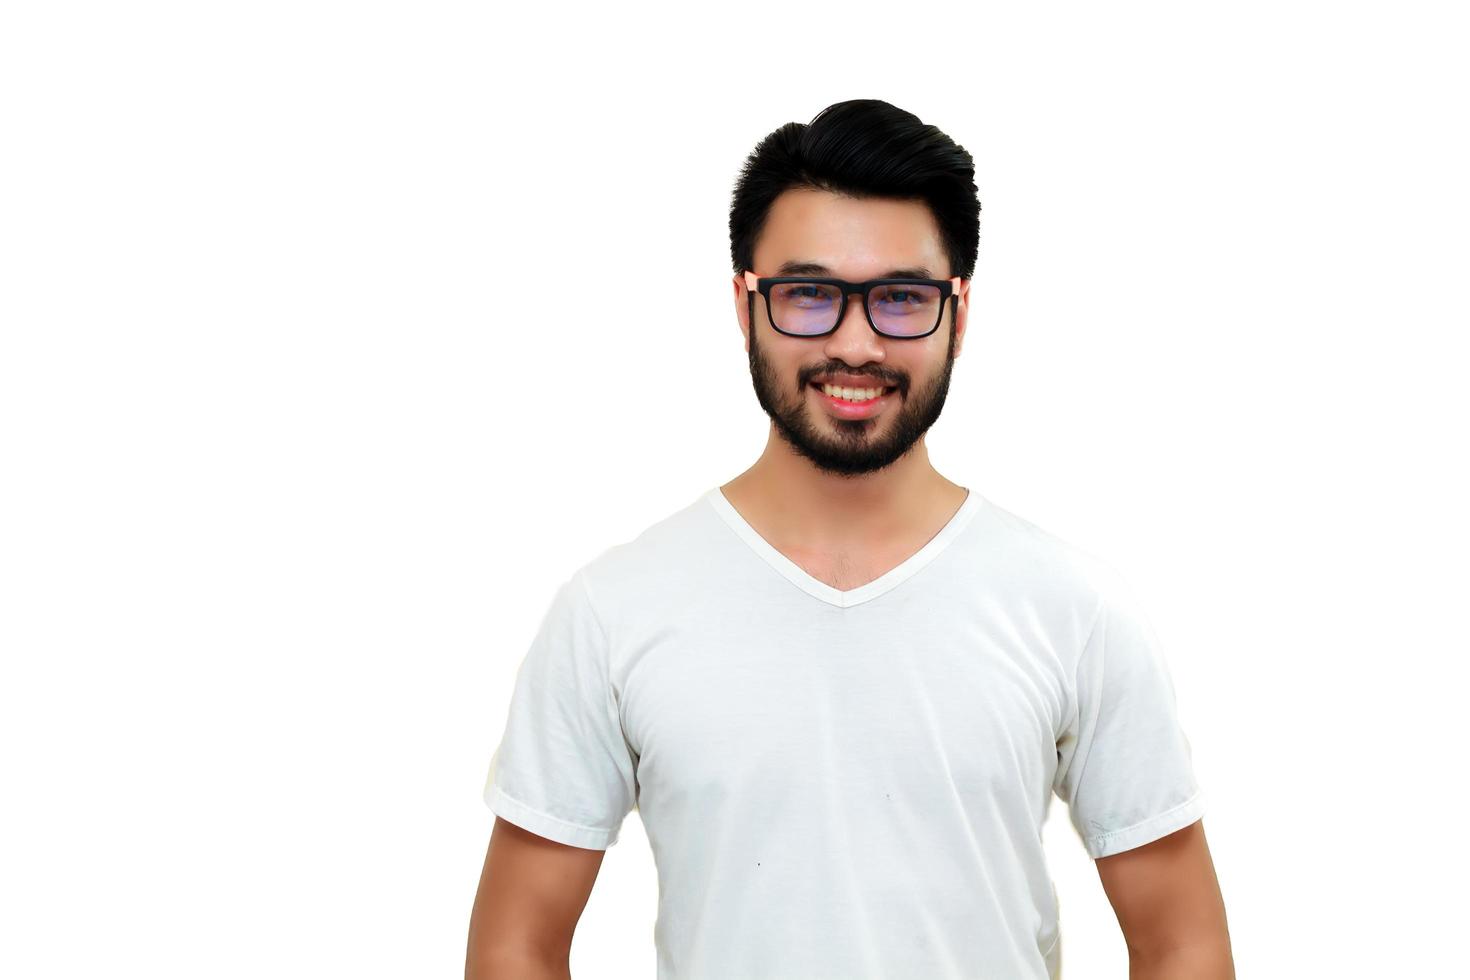 Aziatische man die lacht geïsoleerd op een witte achtergrond foto